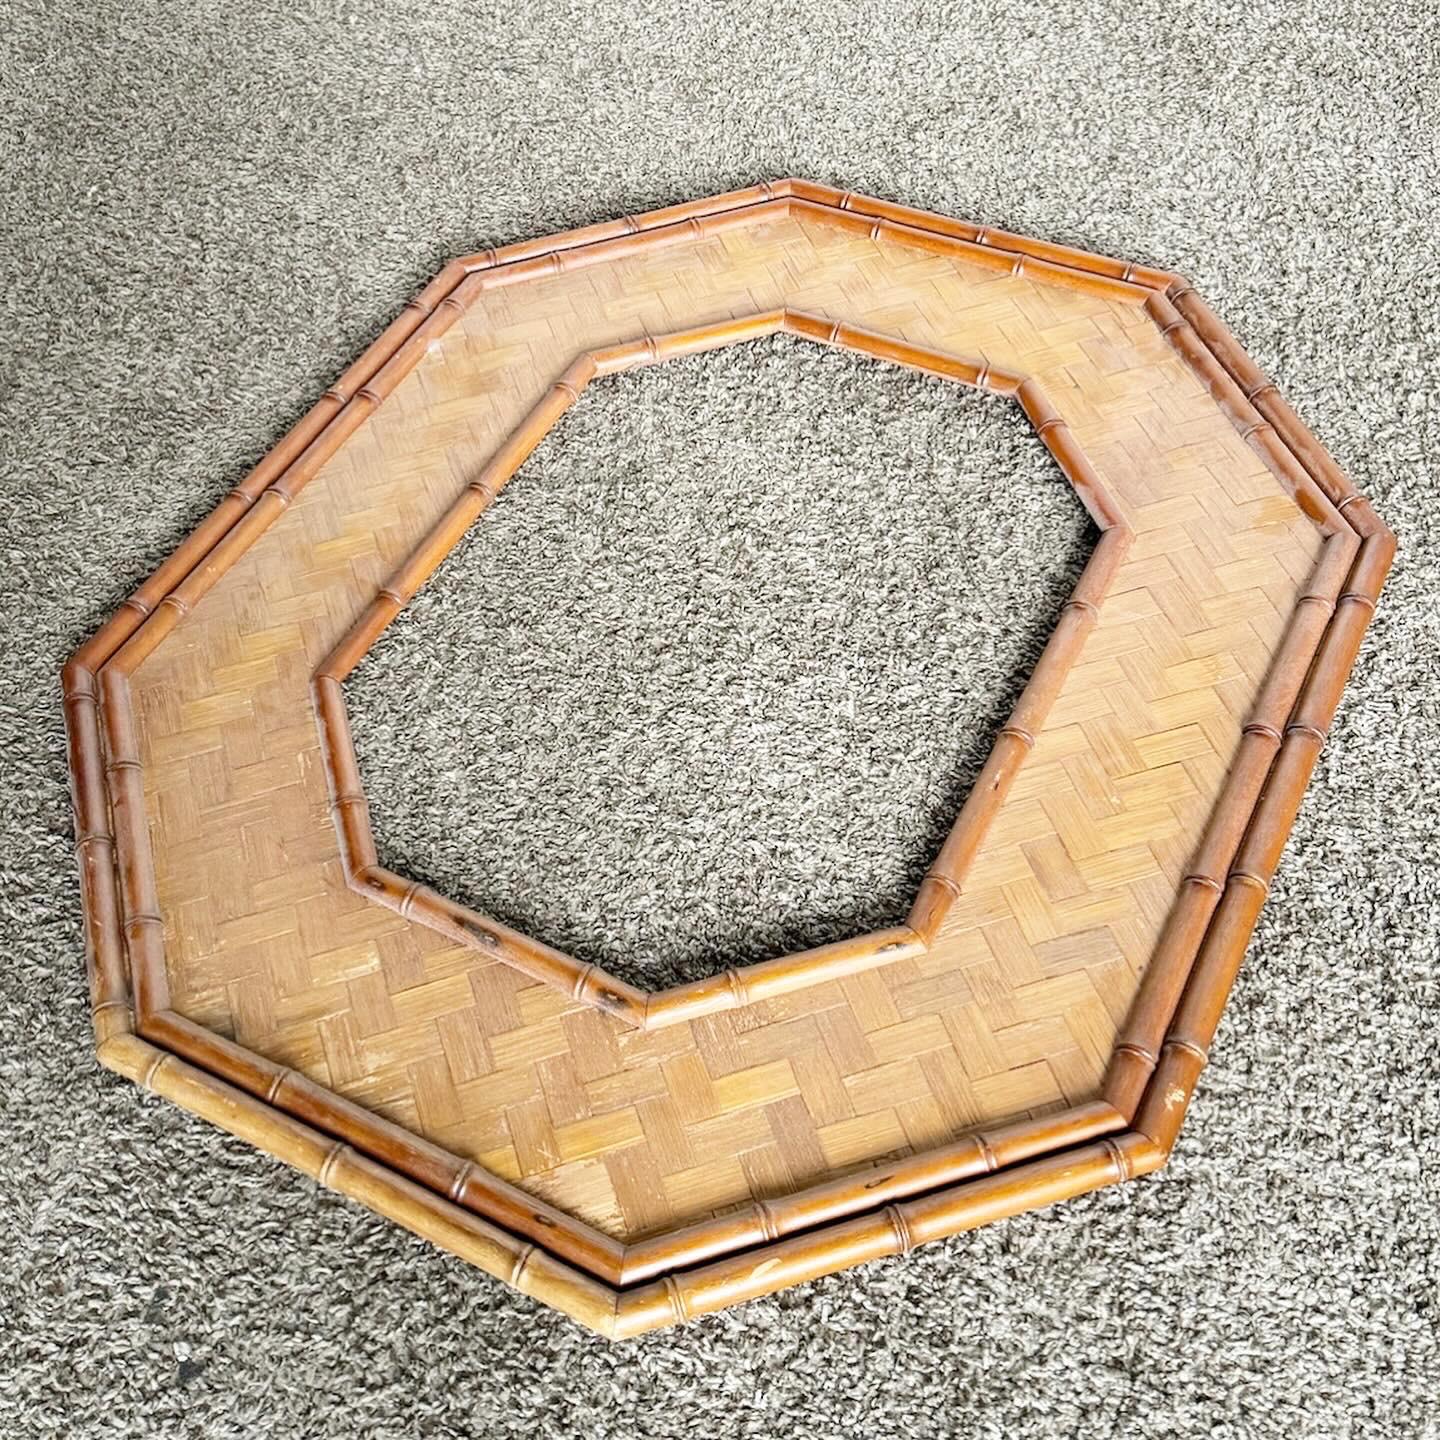 Wood Boho Chic Octagonal Herringbone Frame For Sale